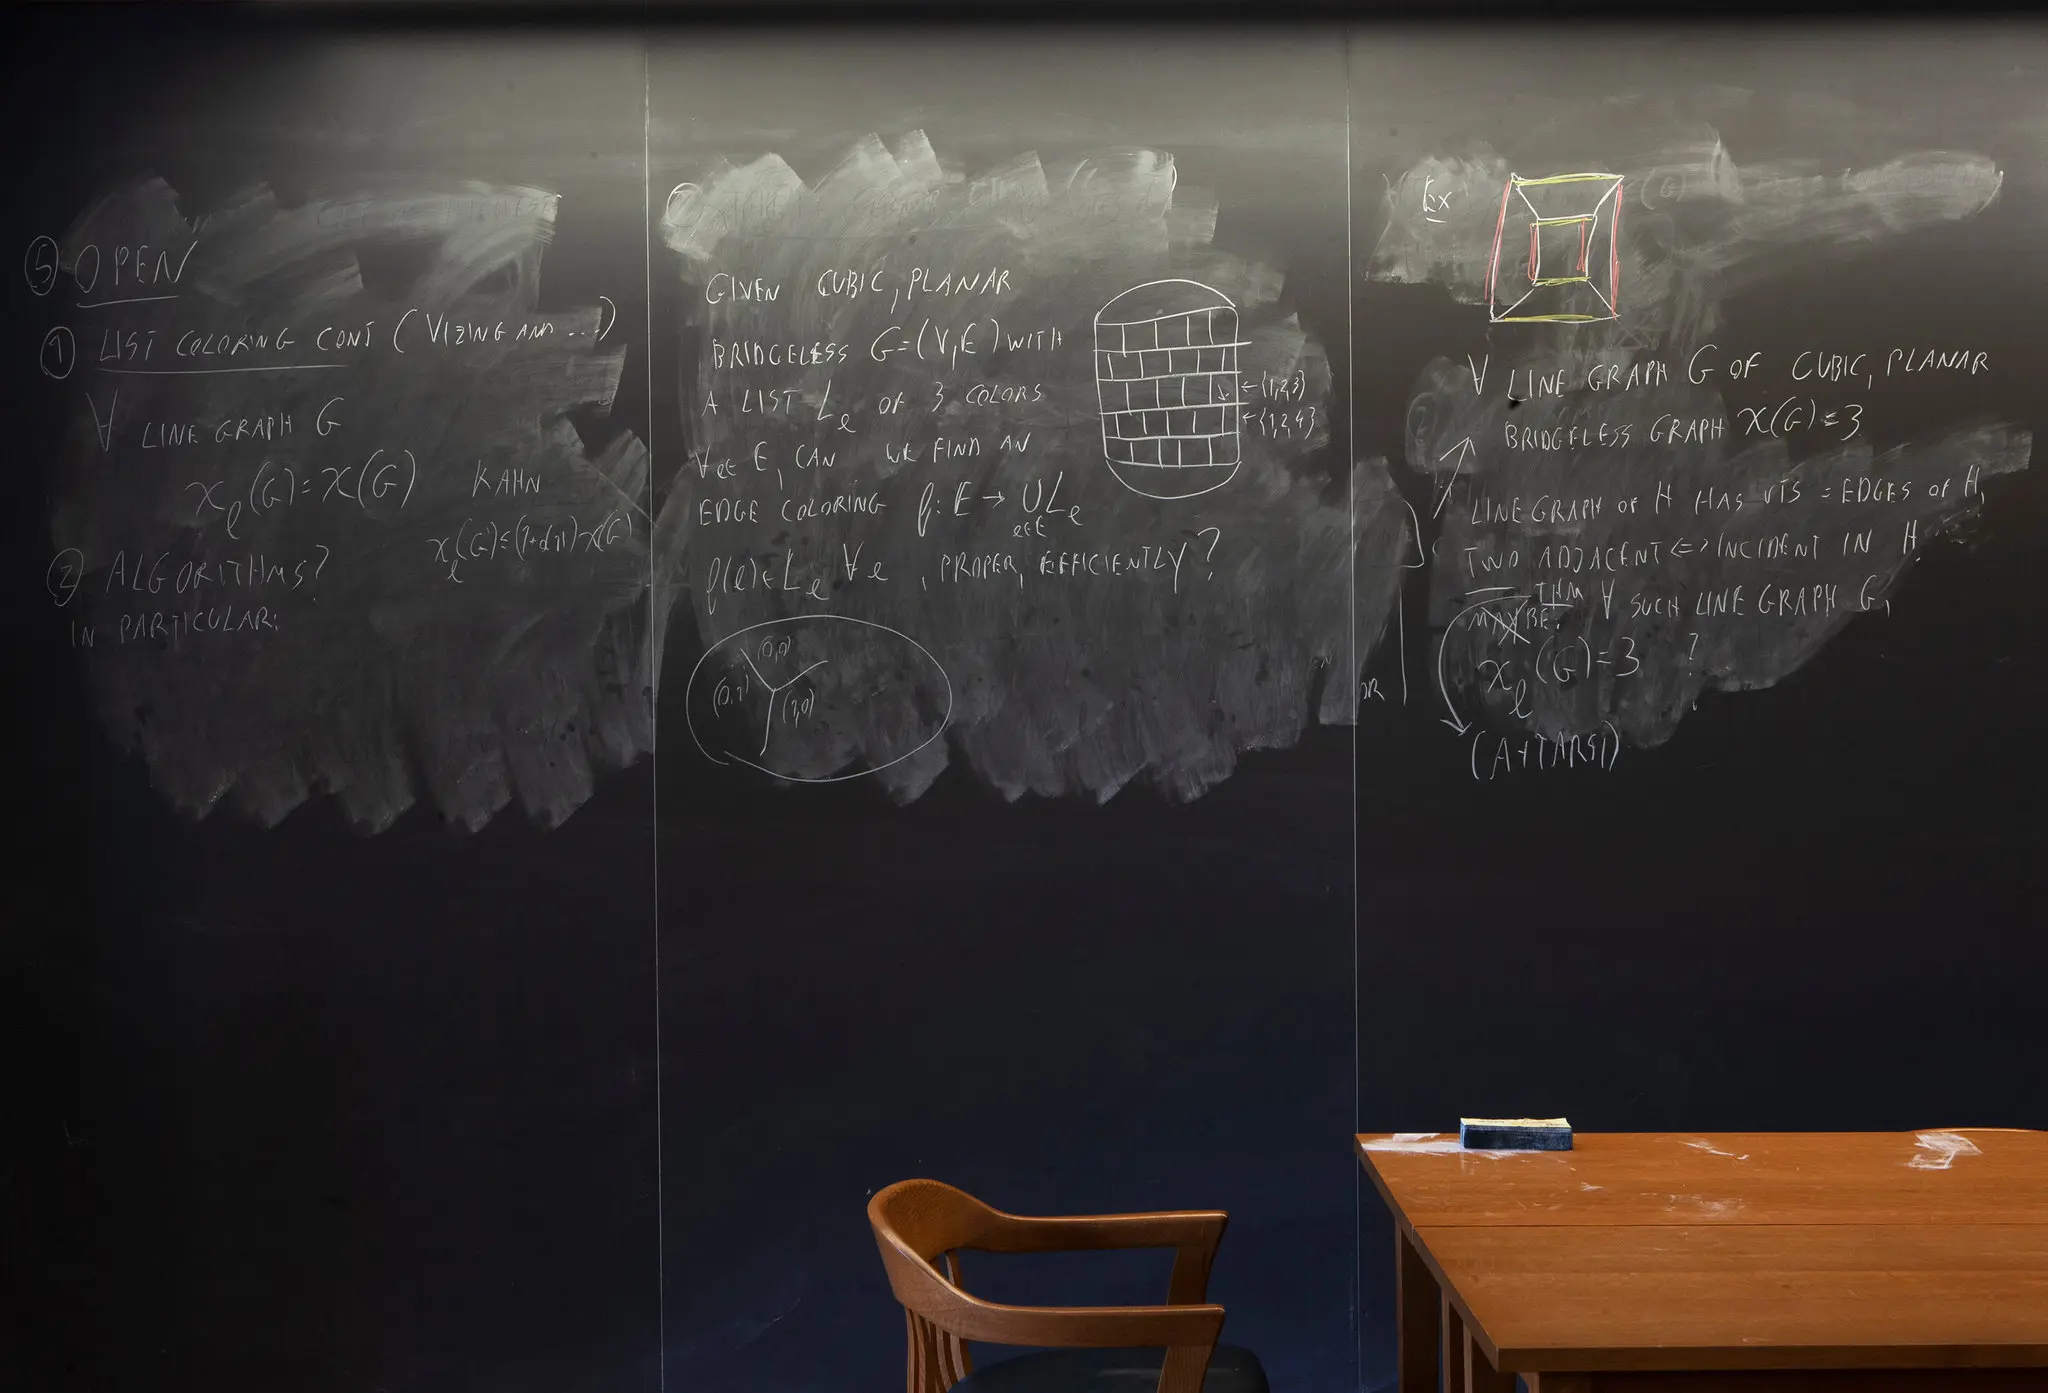 Dusty chalkboard with faint academic markings written on it.